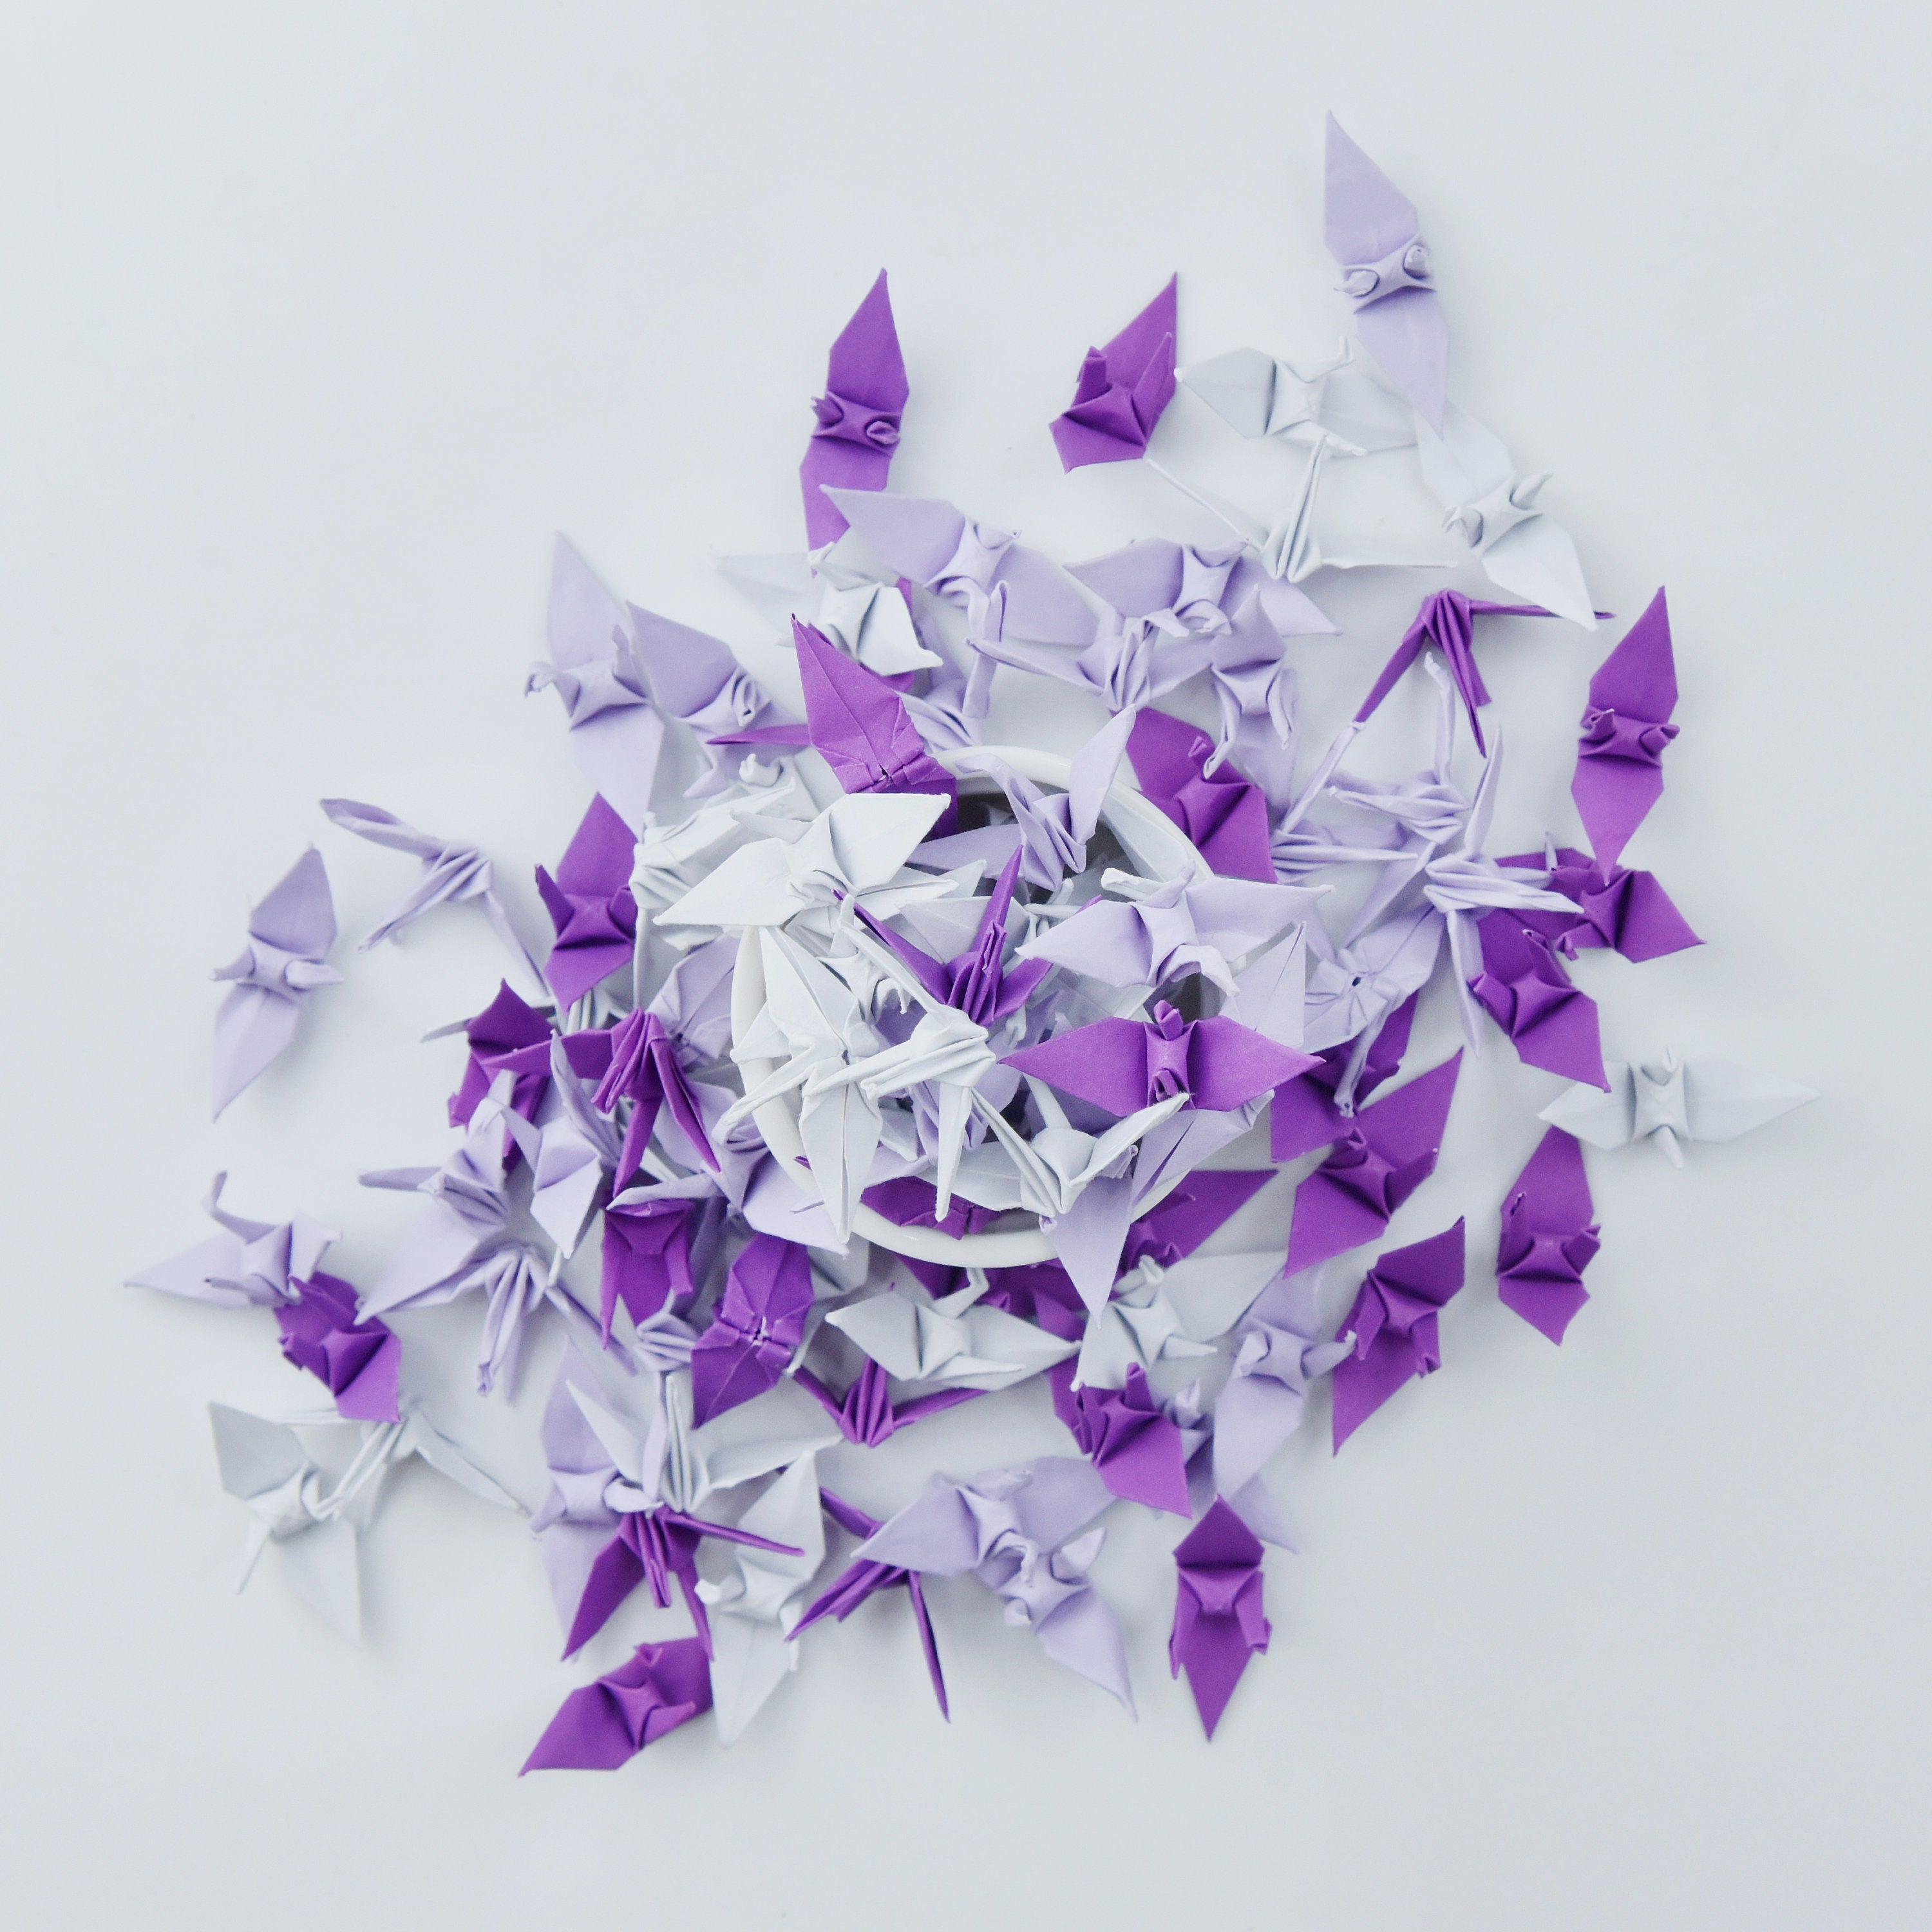 100 Origami Paper Crane Purple Shade - Origami Cranes - Prefabricado - Pequeño 1.5x1.5 pulgadas para decoración de bodas, regalo de aniversario, San Valentín